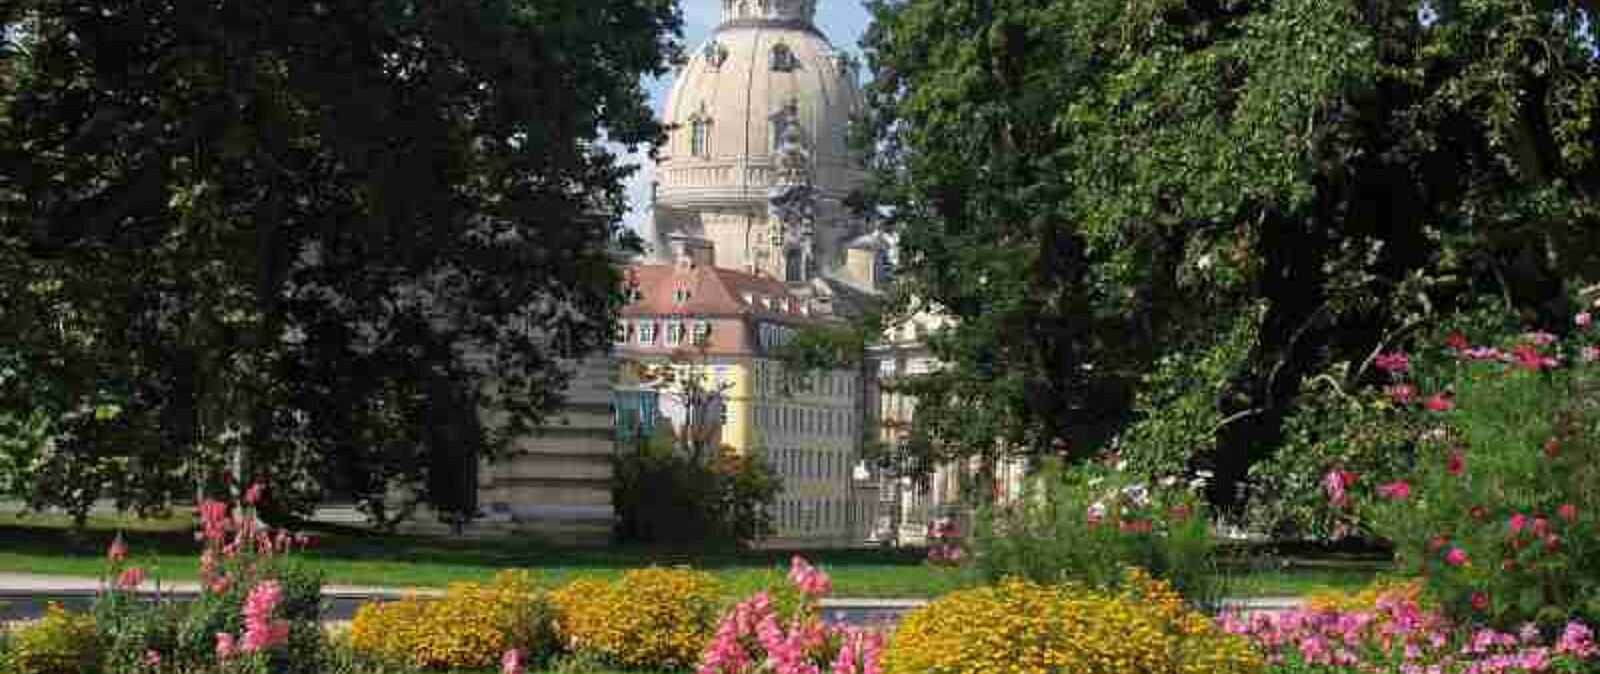 Während des Stadtrundganges besuchen wir die Dresdner Frauenkirche, den Fürstenzug und den Zwinger mit neuen Orangenbäumen